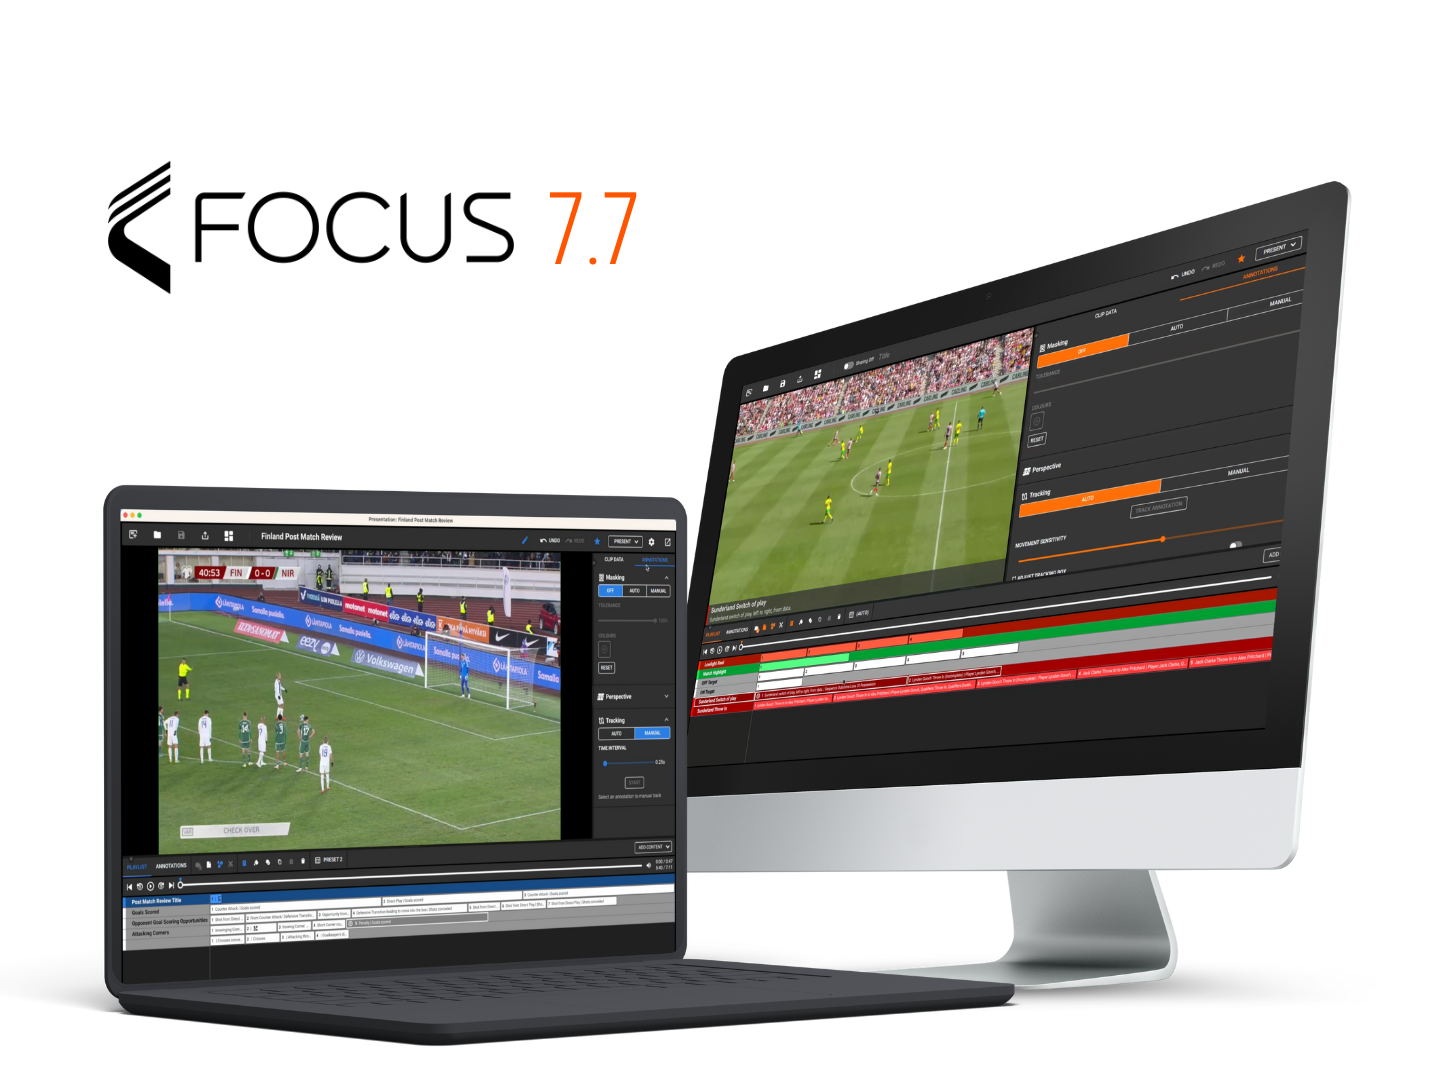 Divers appareils, notamment un ordinateur portable, un ordinateur de bureau et un smartphone affichant les interfaces d'analyse du football de la plateforme Focus 7.7. Les appareils sont disposés selon un motif circulaire sur fond orange.